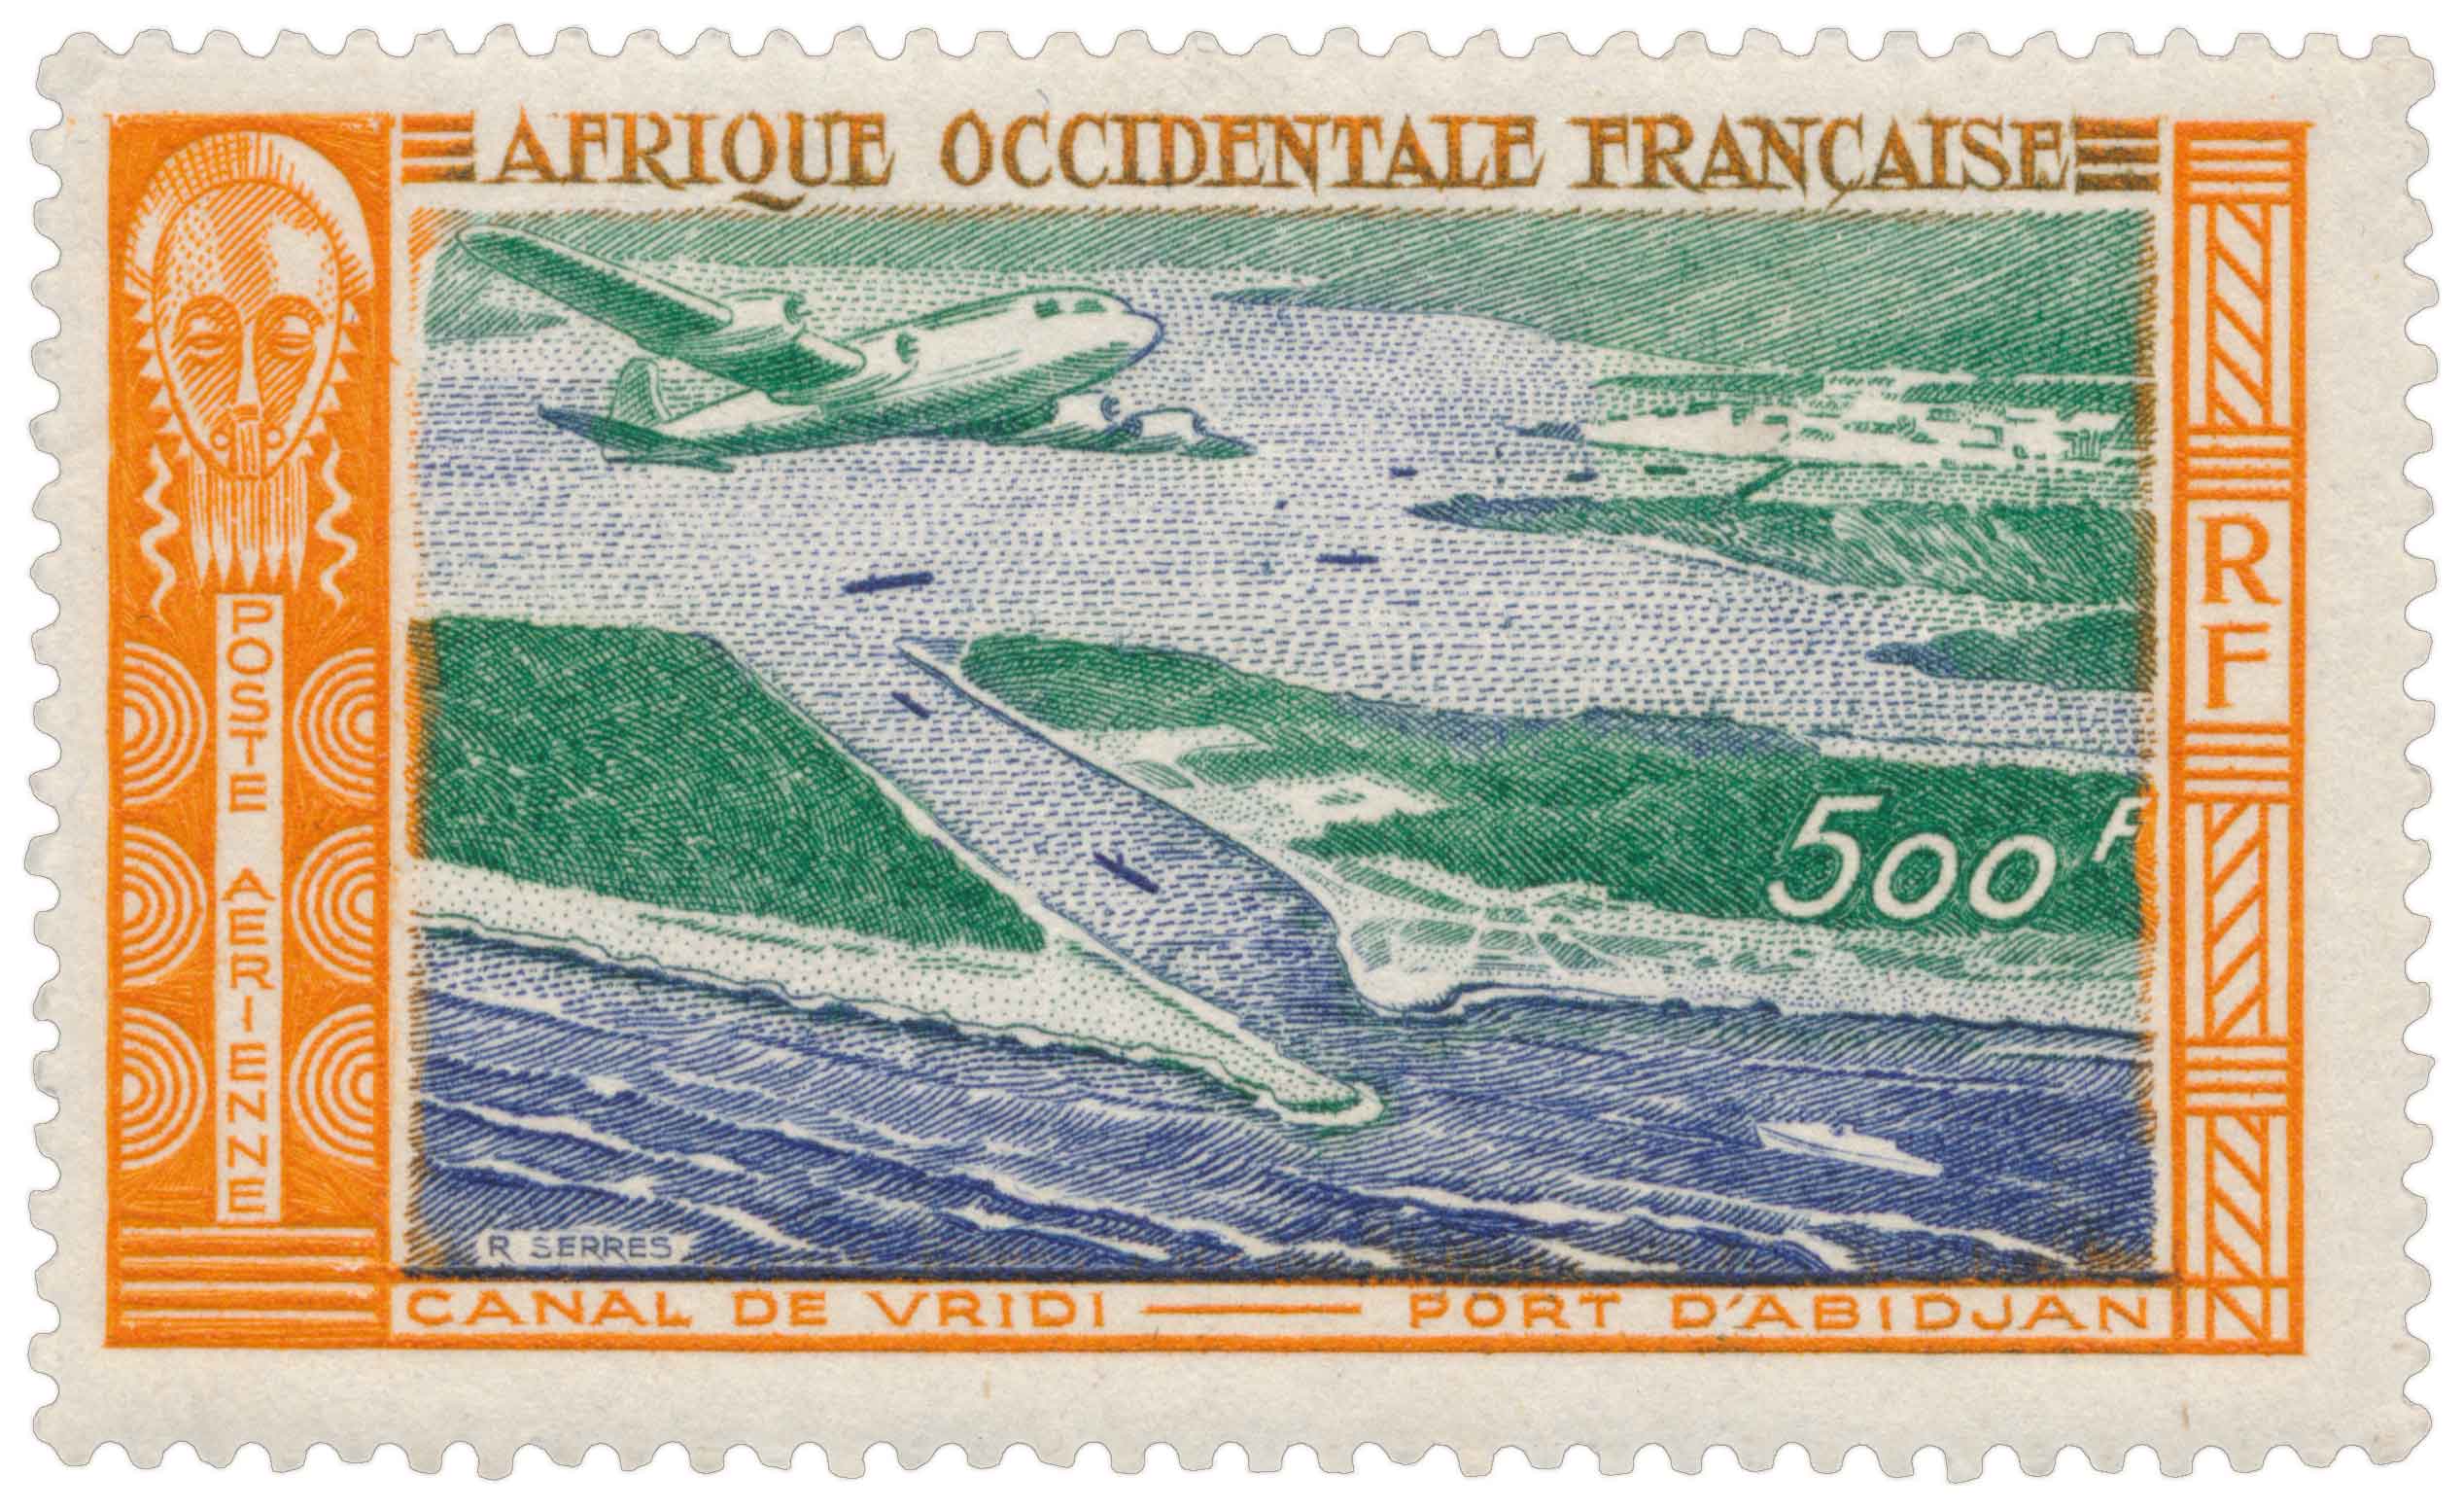 Afrique Occidentale Française - Canal de Vridi  port d'Abidjan